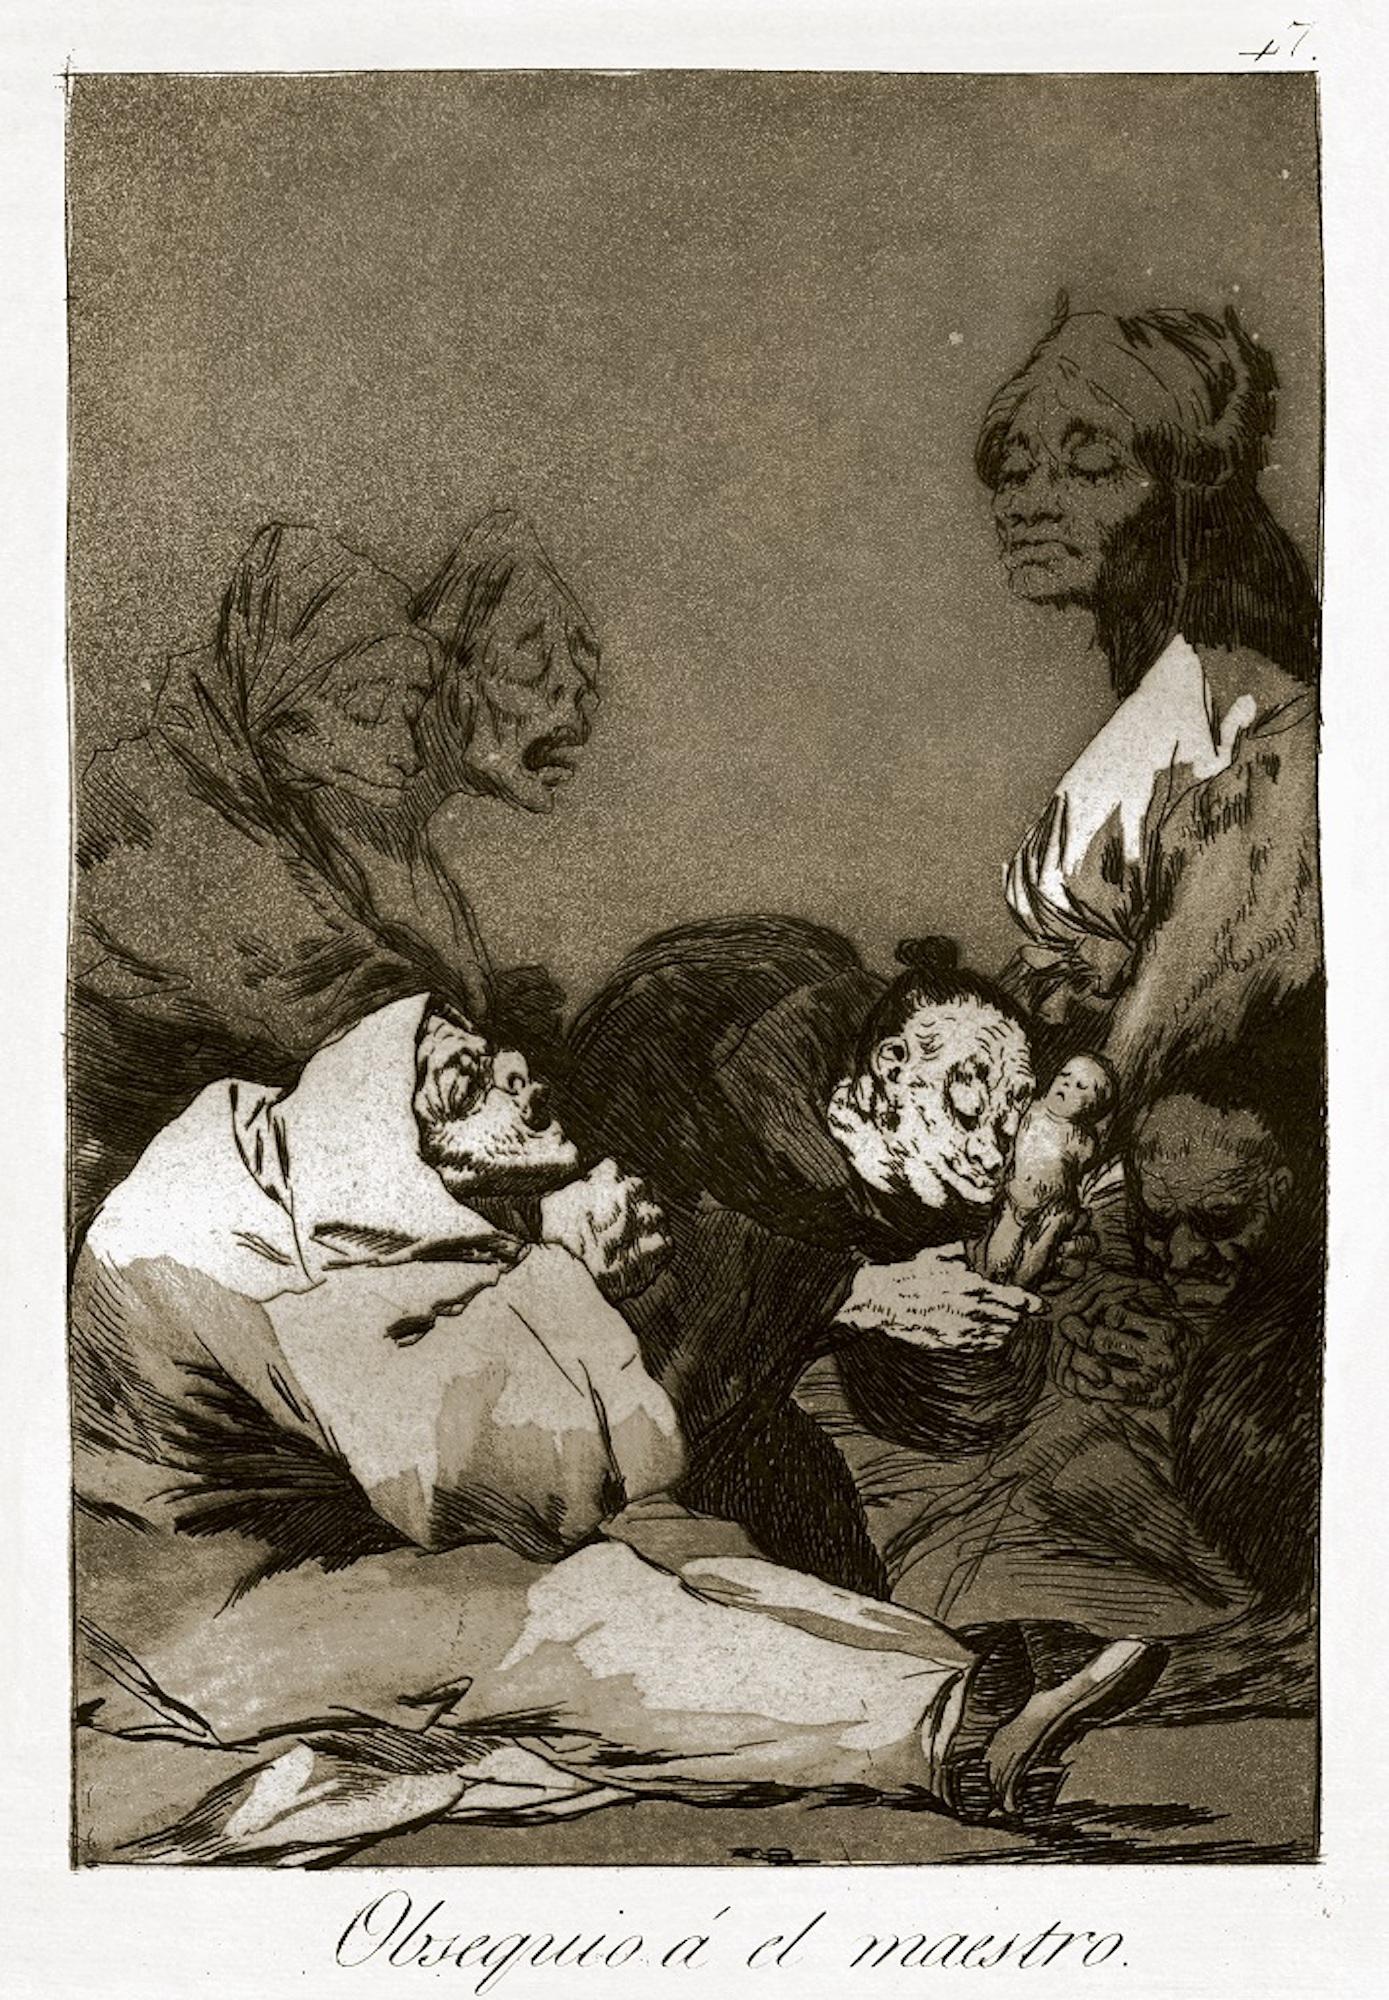 Obsequio a el Maestro ist ein originales Kunstwerk von Francisco Goya, das 1799 zum ersten Mal veröffentlicht wurde.

Radierung auf Velin.

Dieses Kunstwerk gehört zur dritten Ausgabe, die 1868 von der Calcografia National für die Real Academia